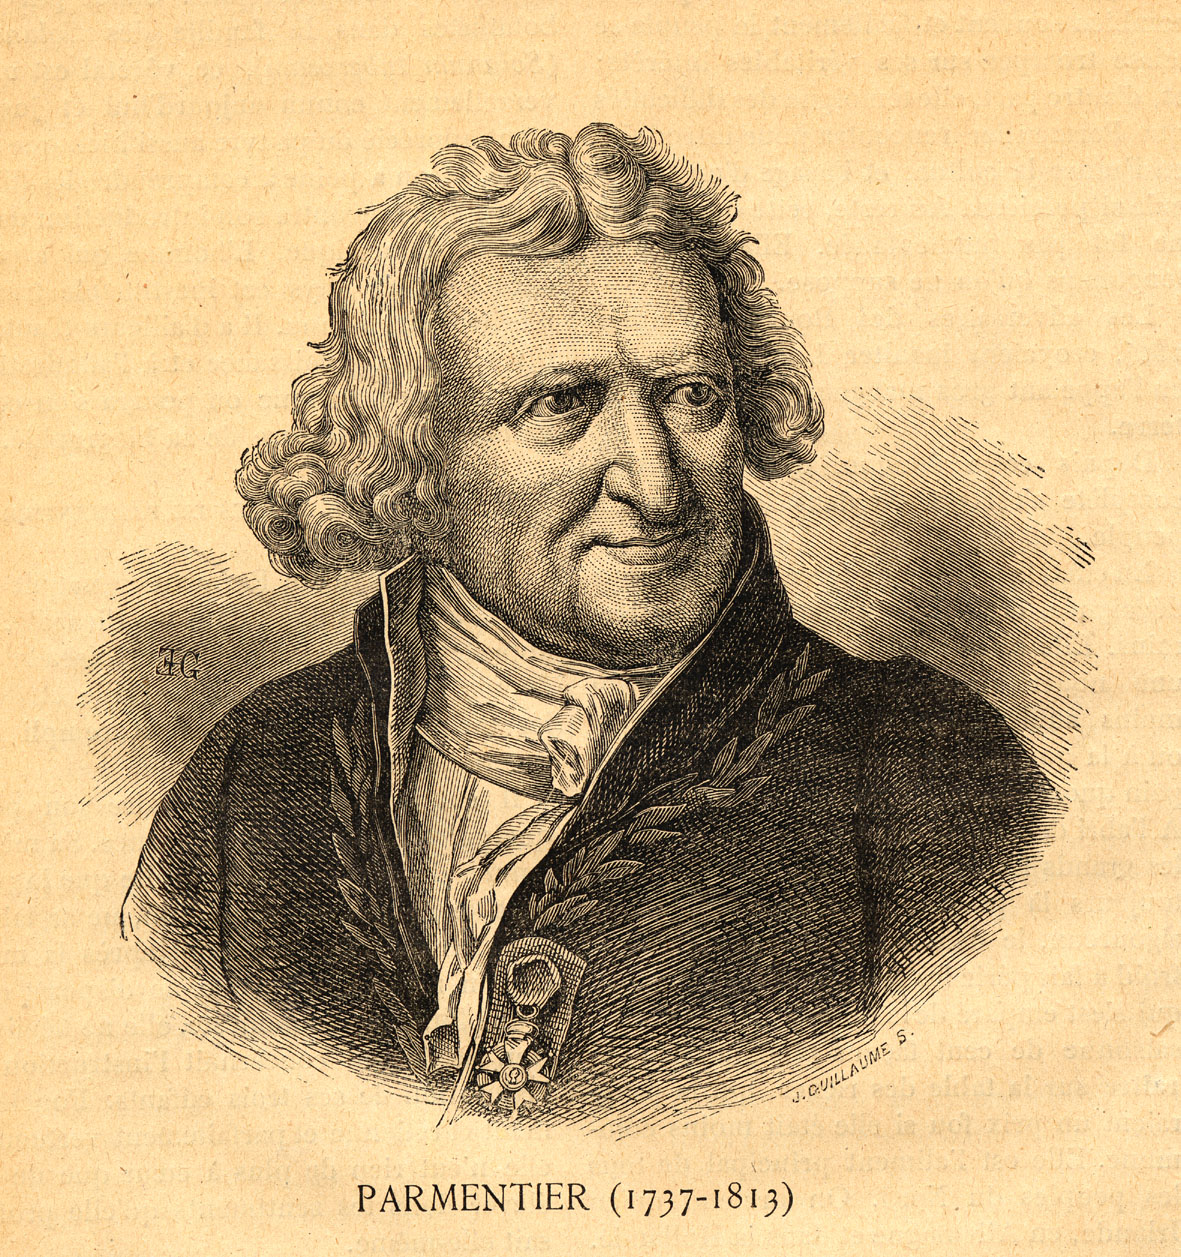 Parmentier (1737-1813)